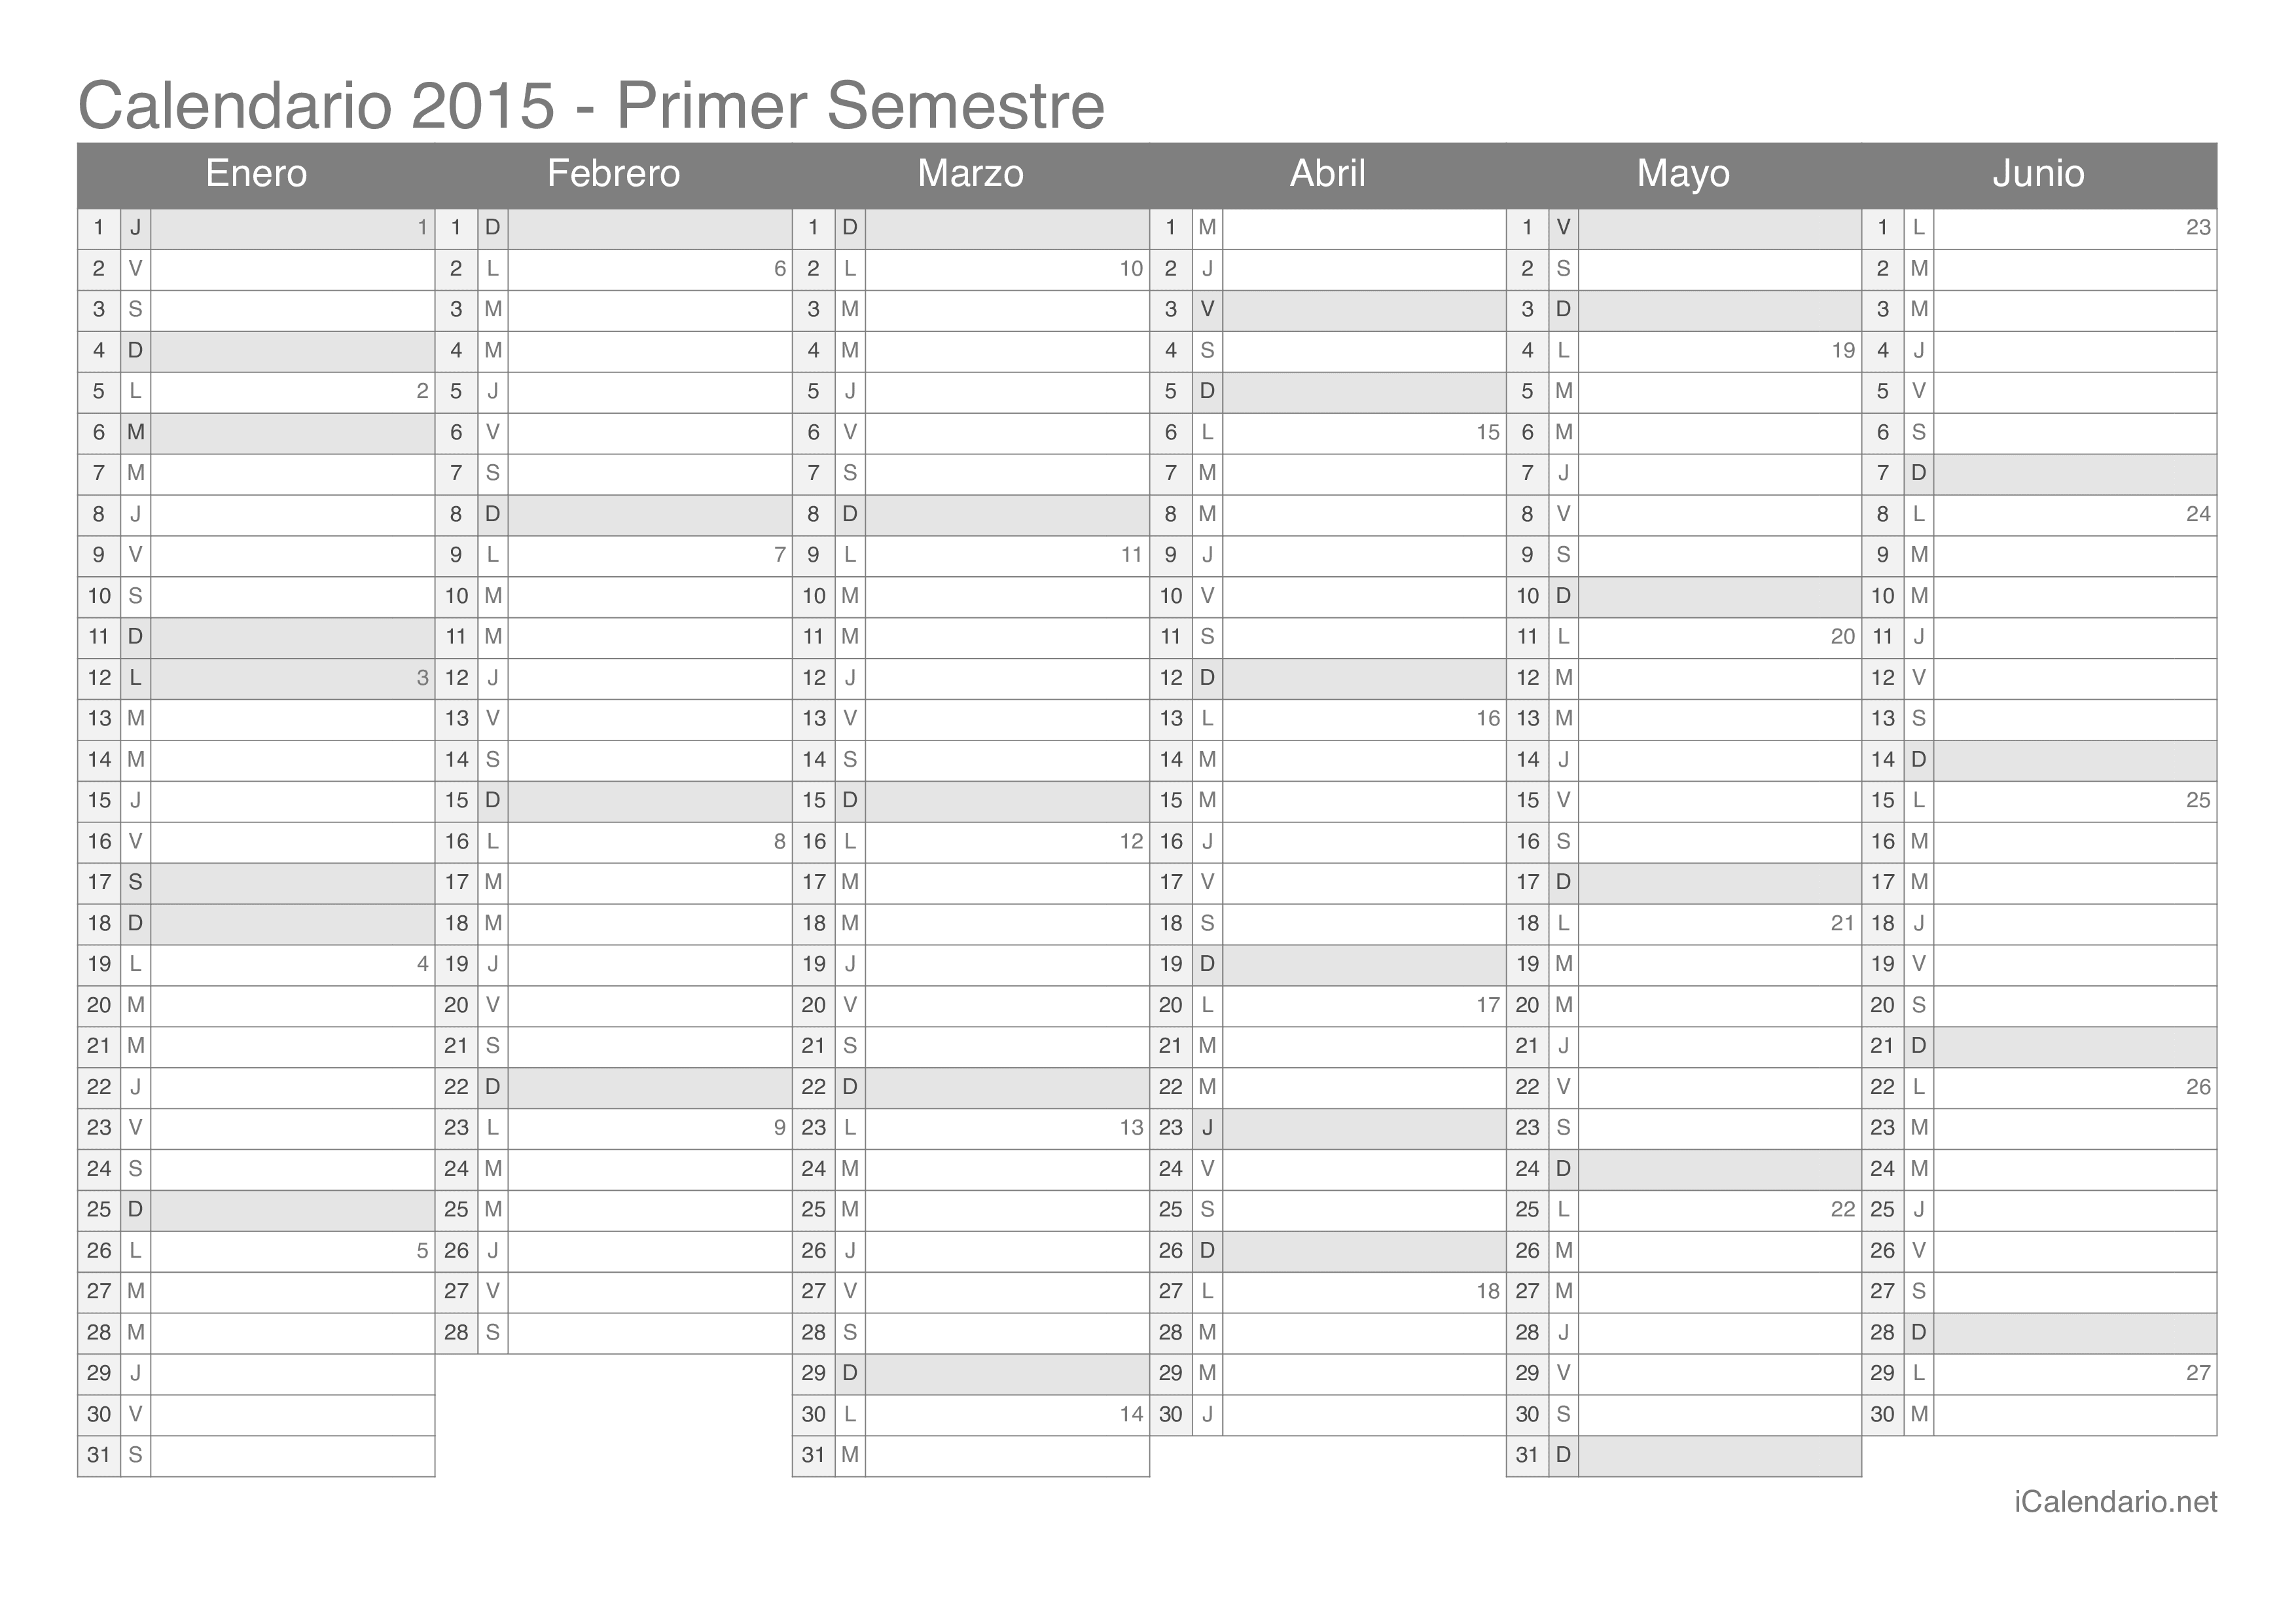 Calendario por semestre com números da semana 2015